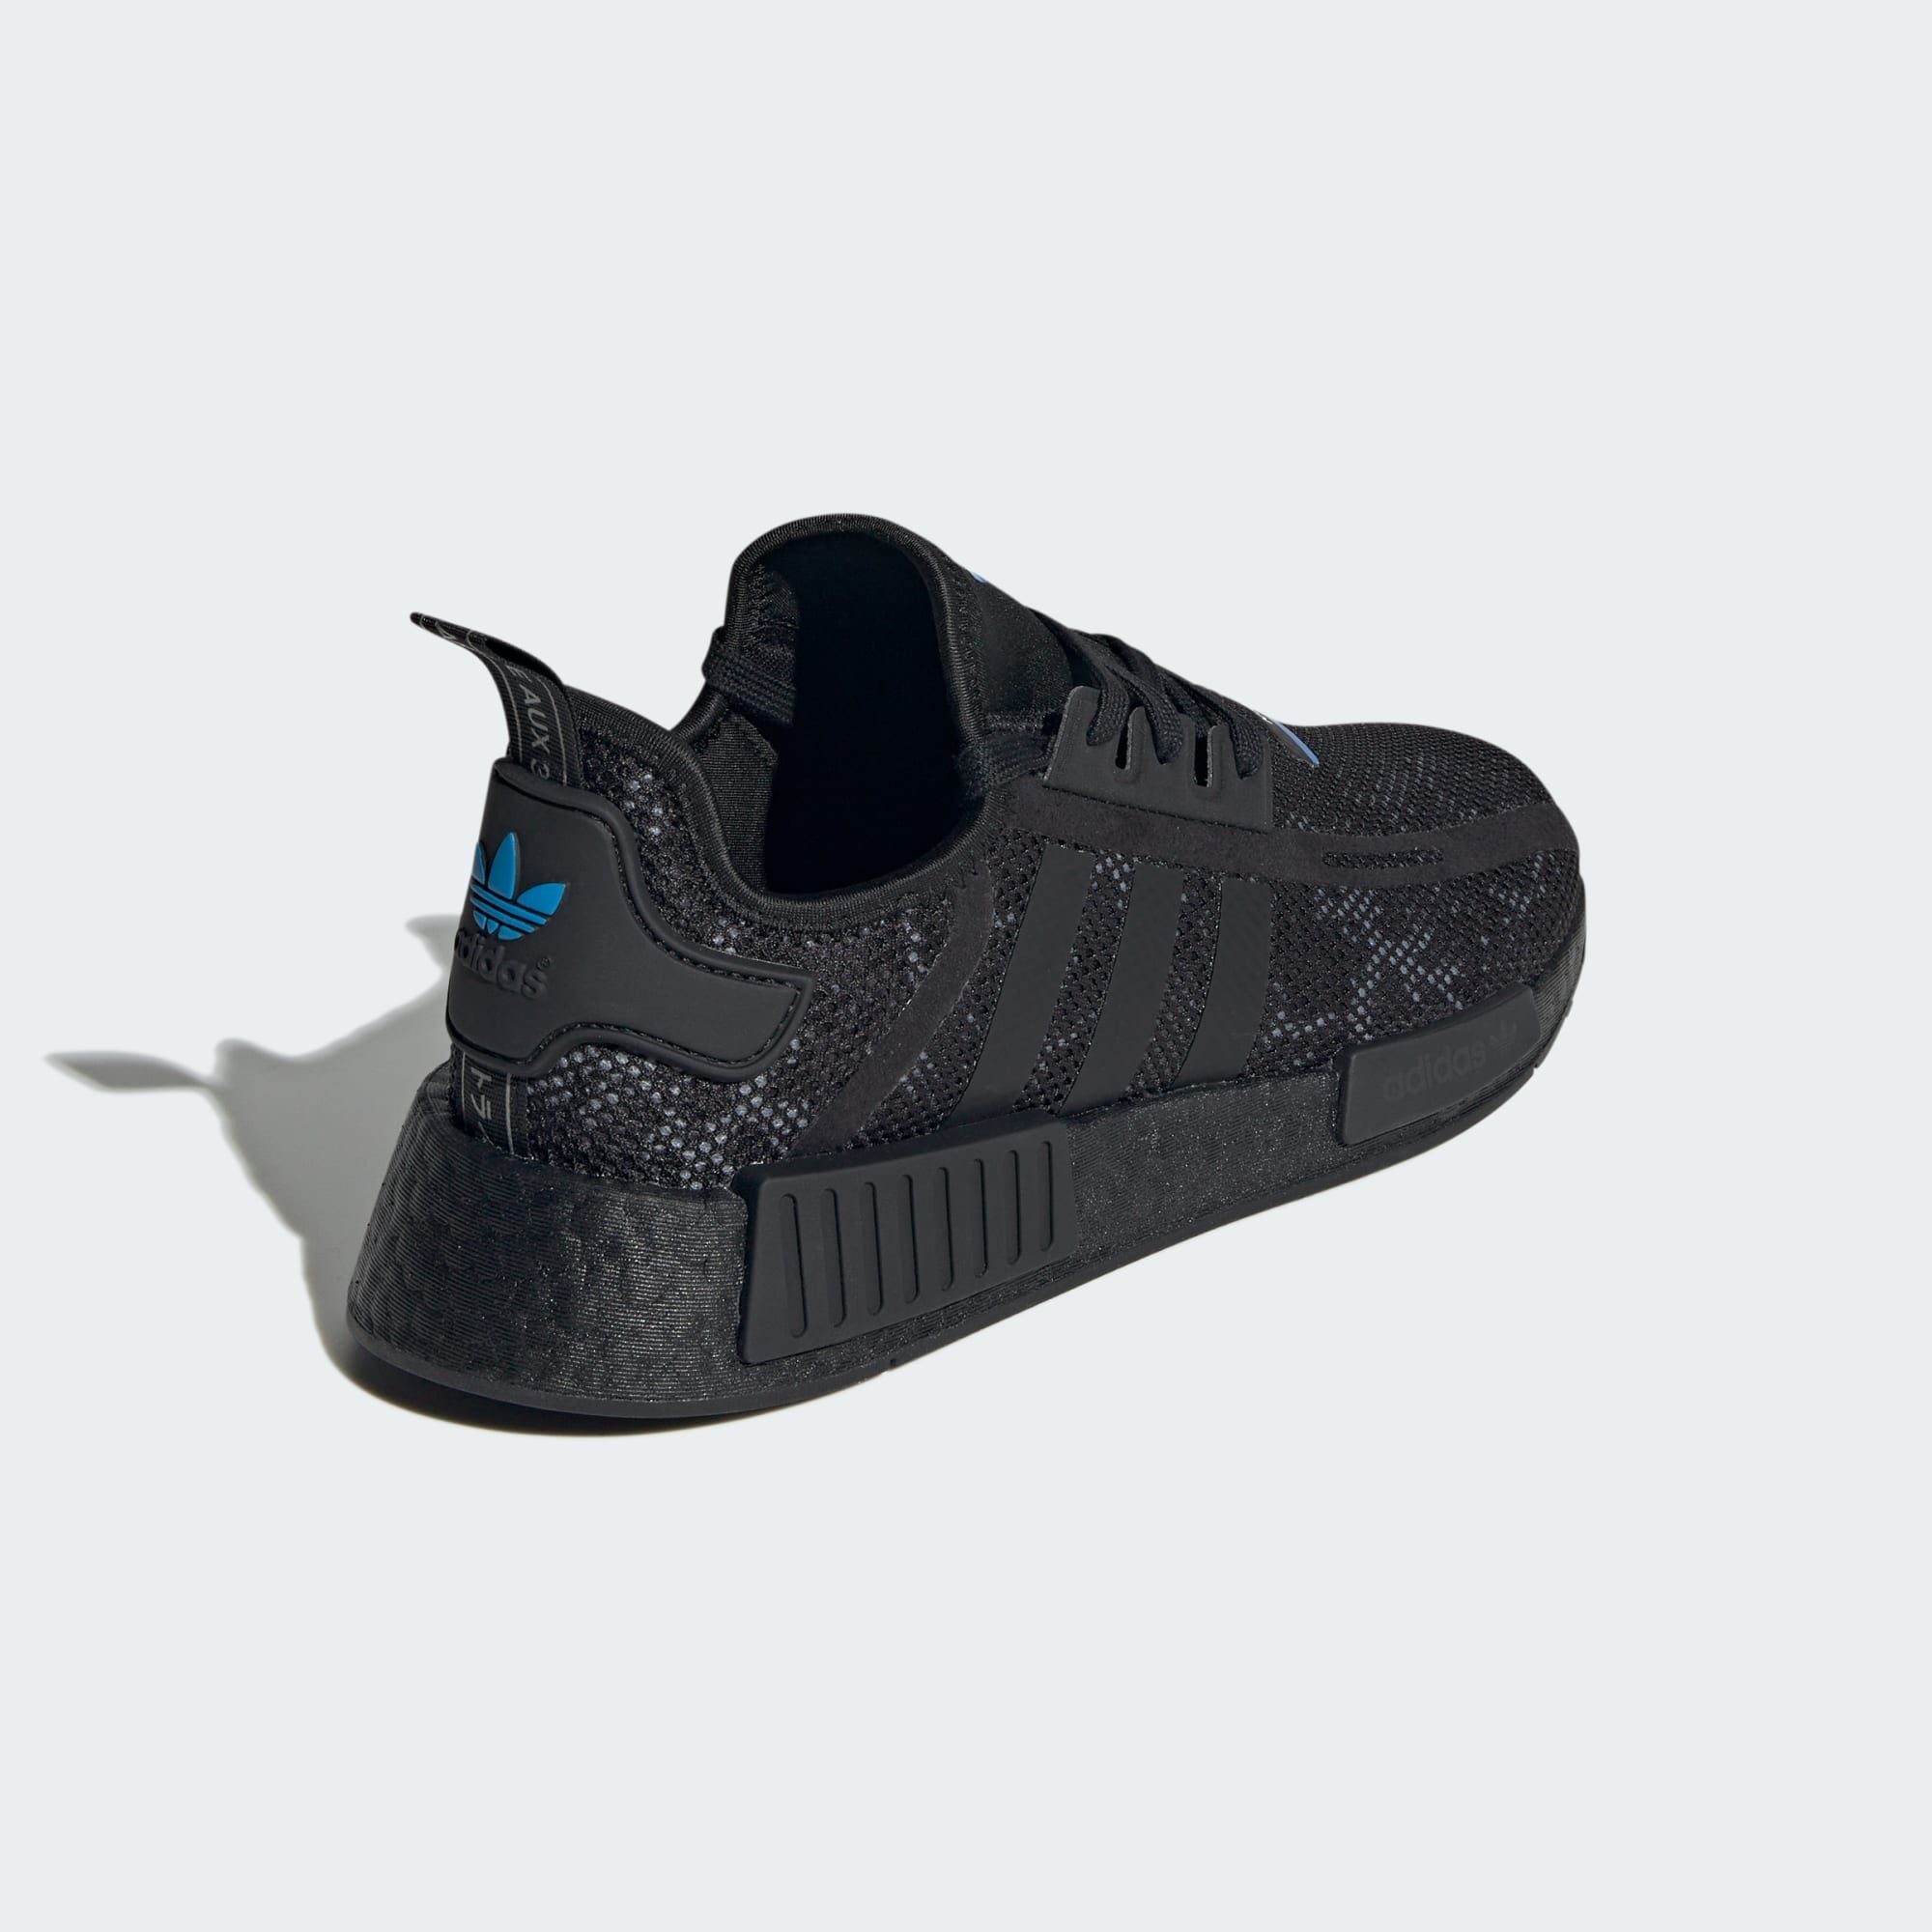 Sneaker Black Grey Carbon / / Five Originals Core NMD_R1 SCHUH adidas